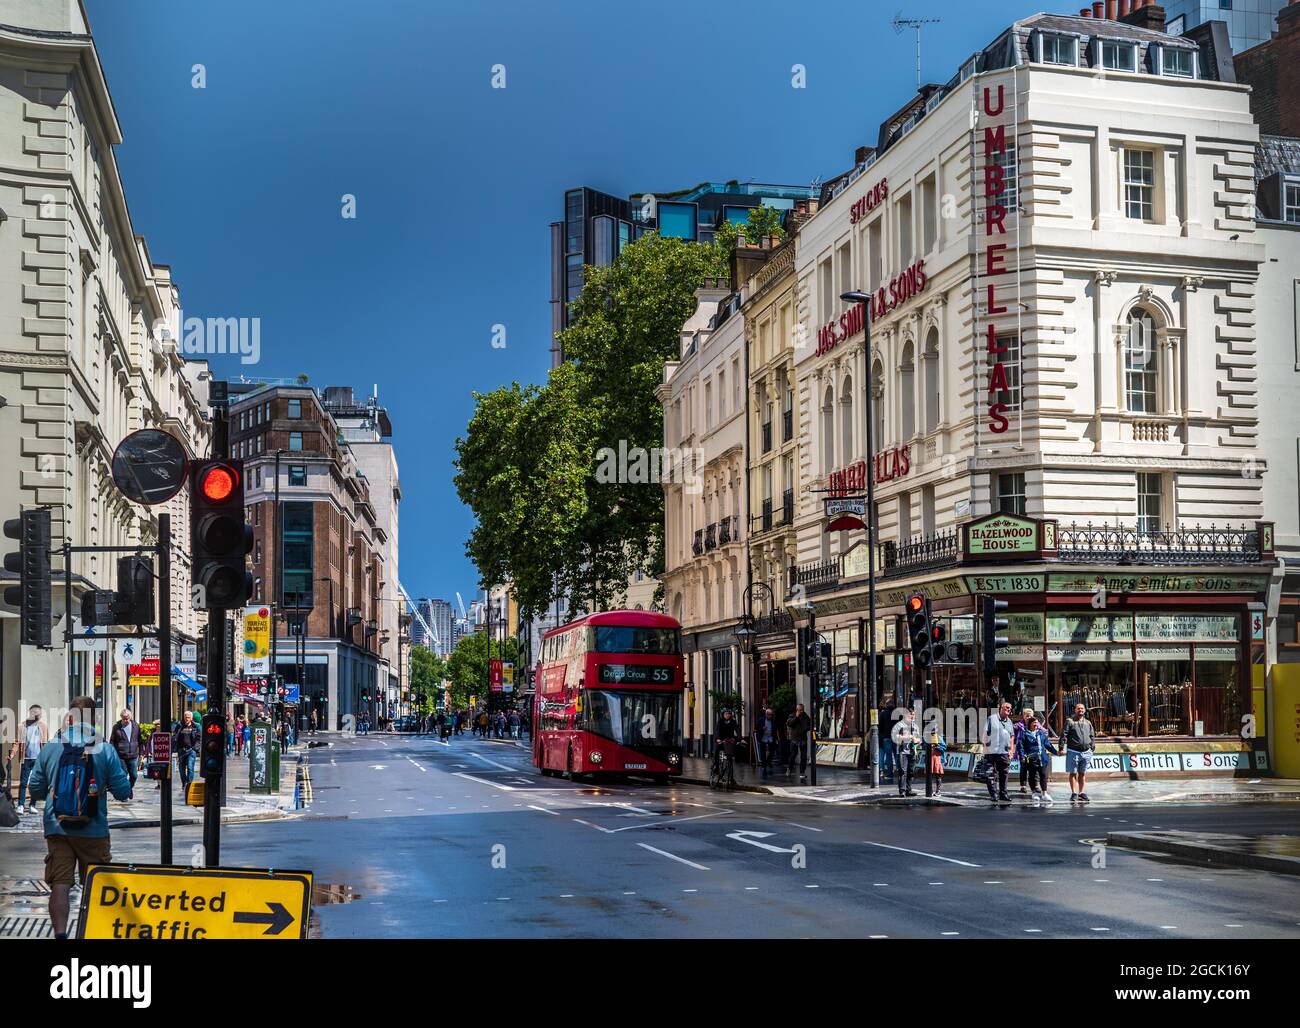 New Oxford Street en direction de Holborn dans le centre de Londres - magasin de parapluie James Smith sur la droite. Banque D'Images